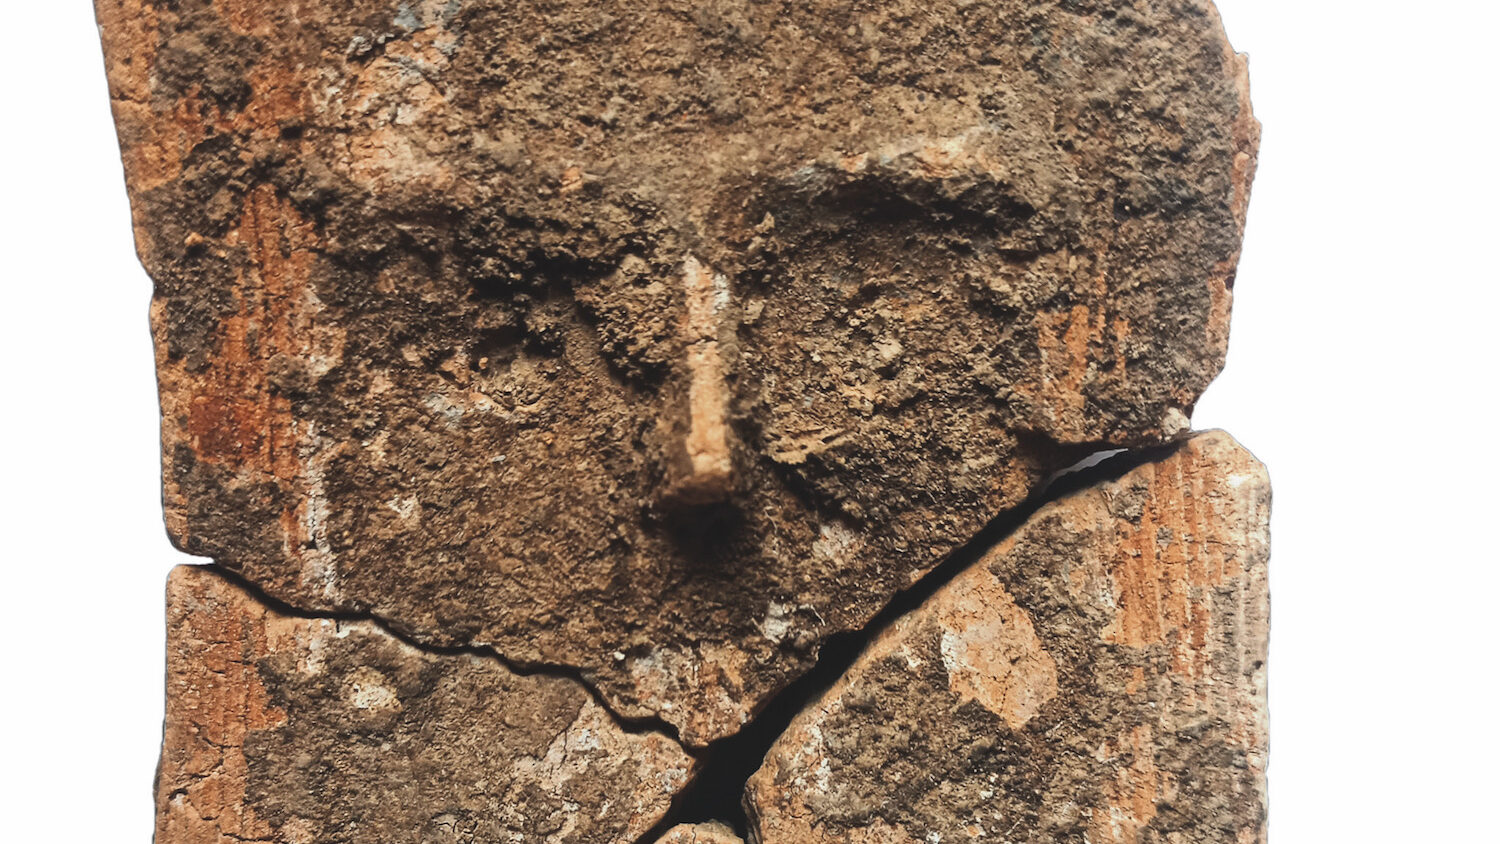 La figurine néolithique trouvée à Montpellier et datée entre 3900 et 3700 avant notre ère (détail). Les traits du visage, la coiffe, ainsi que les traces de polychromie sont bien visibles. Cliché de travail réalisé avant nettoyage, stabilisation et restauration. © ACTER